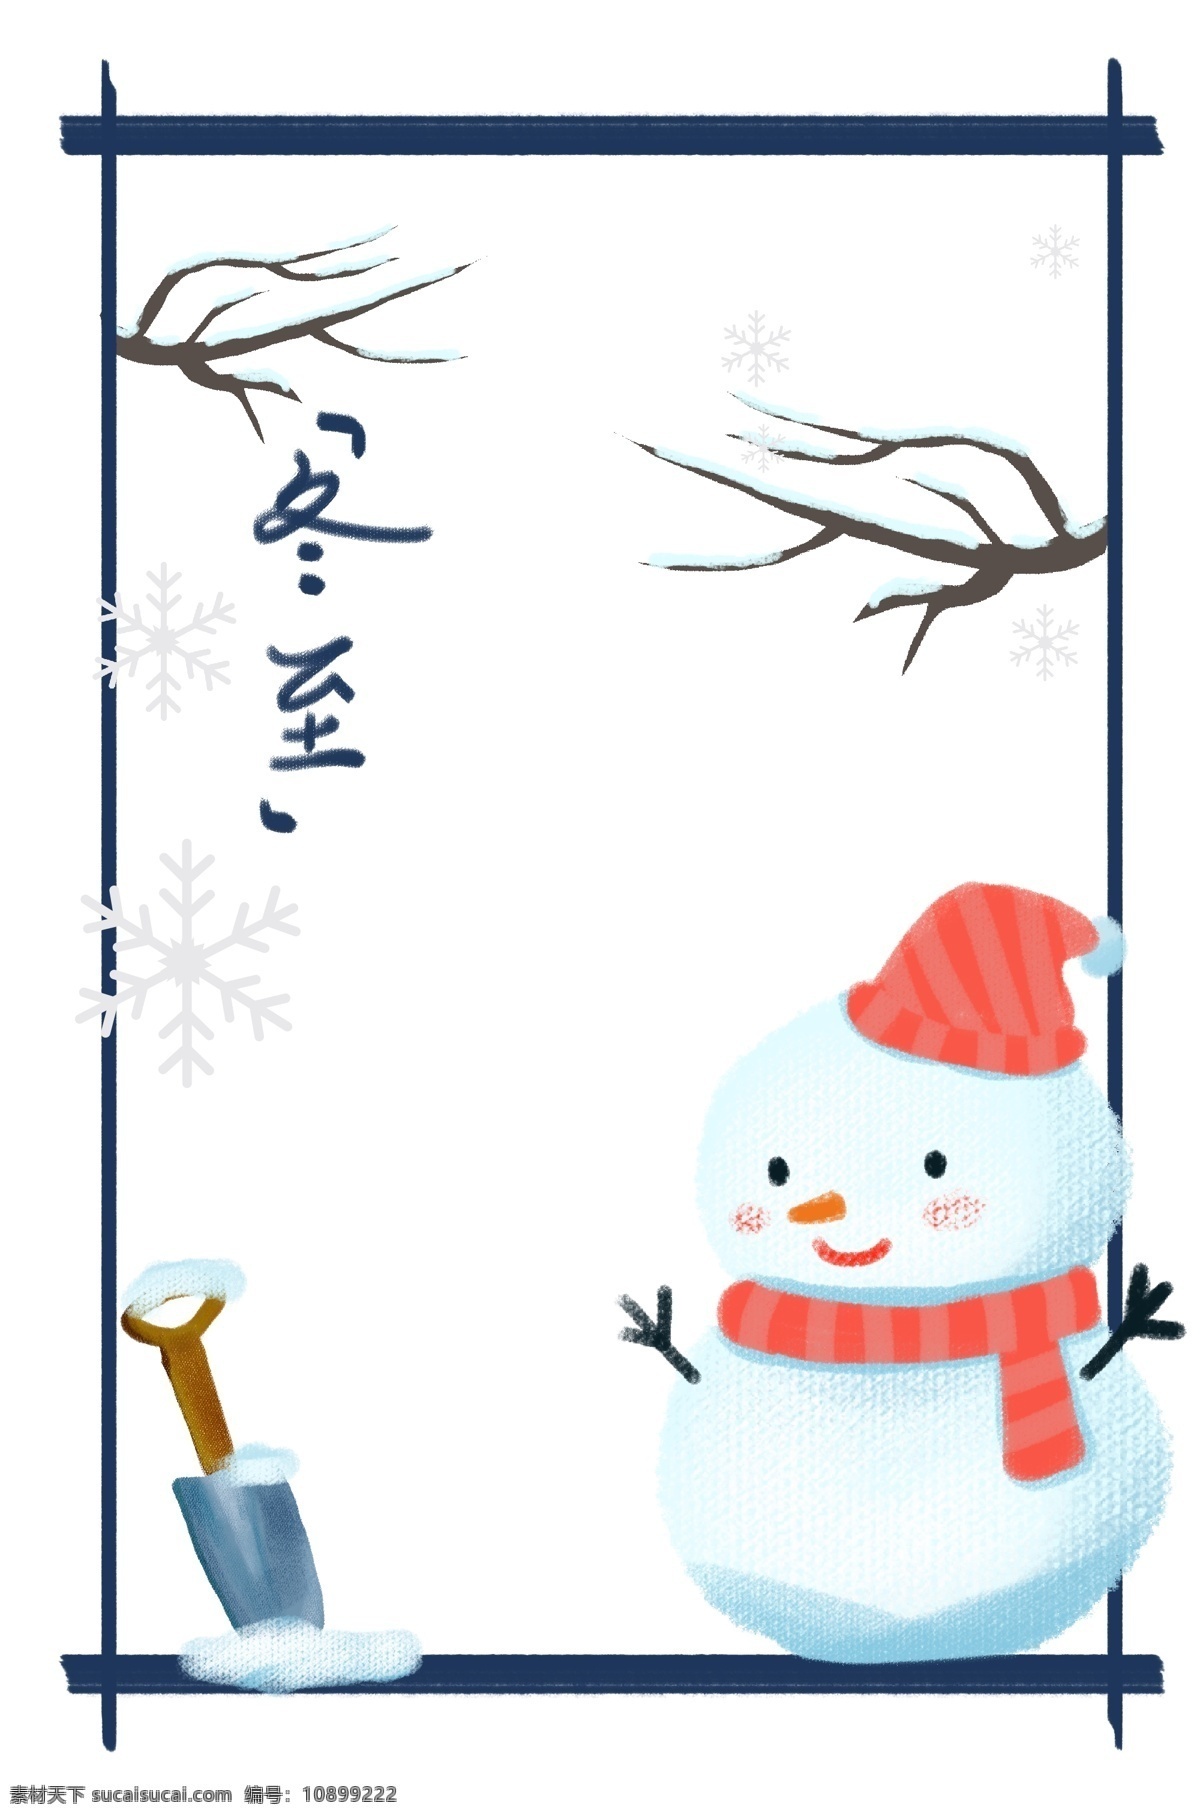 冬至 精致 边框 插画 落雪的树枝 树枝 雪花 雪人 小铲子 铲子 卡通冬至边框 手绘边框 戴帽子的雪人